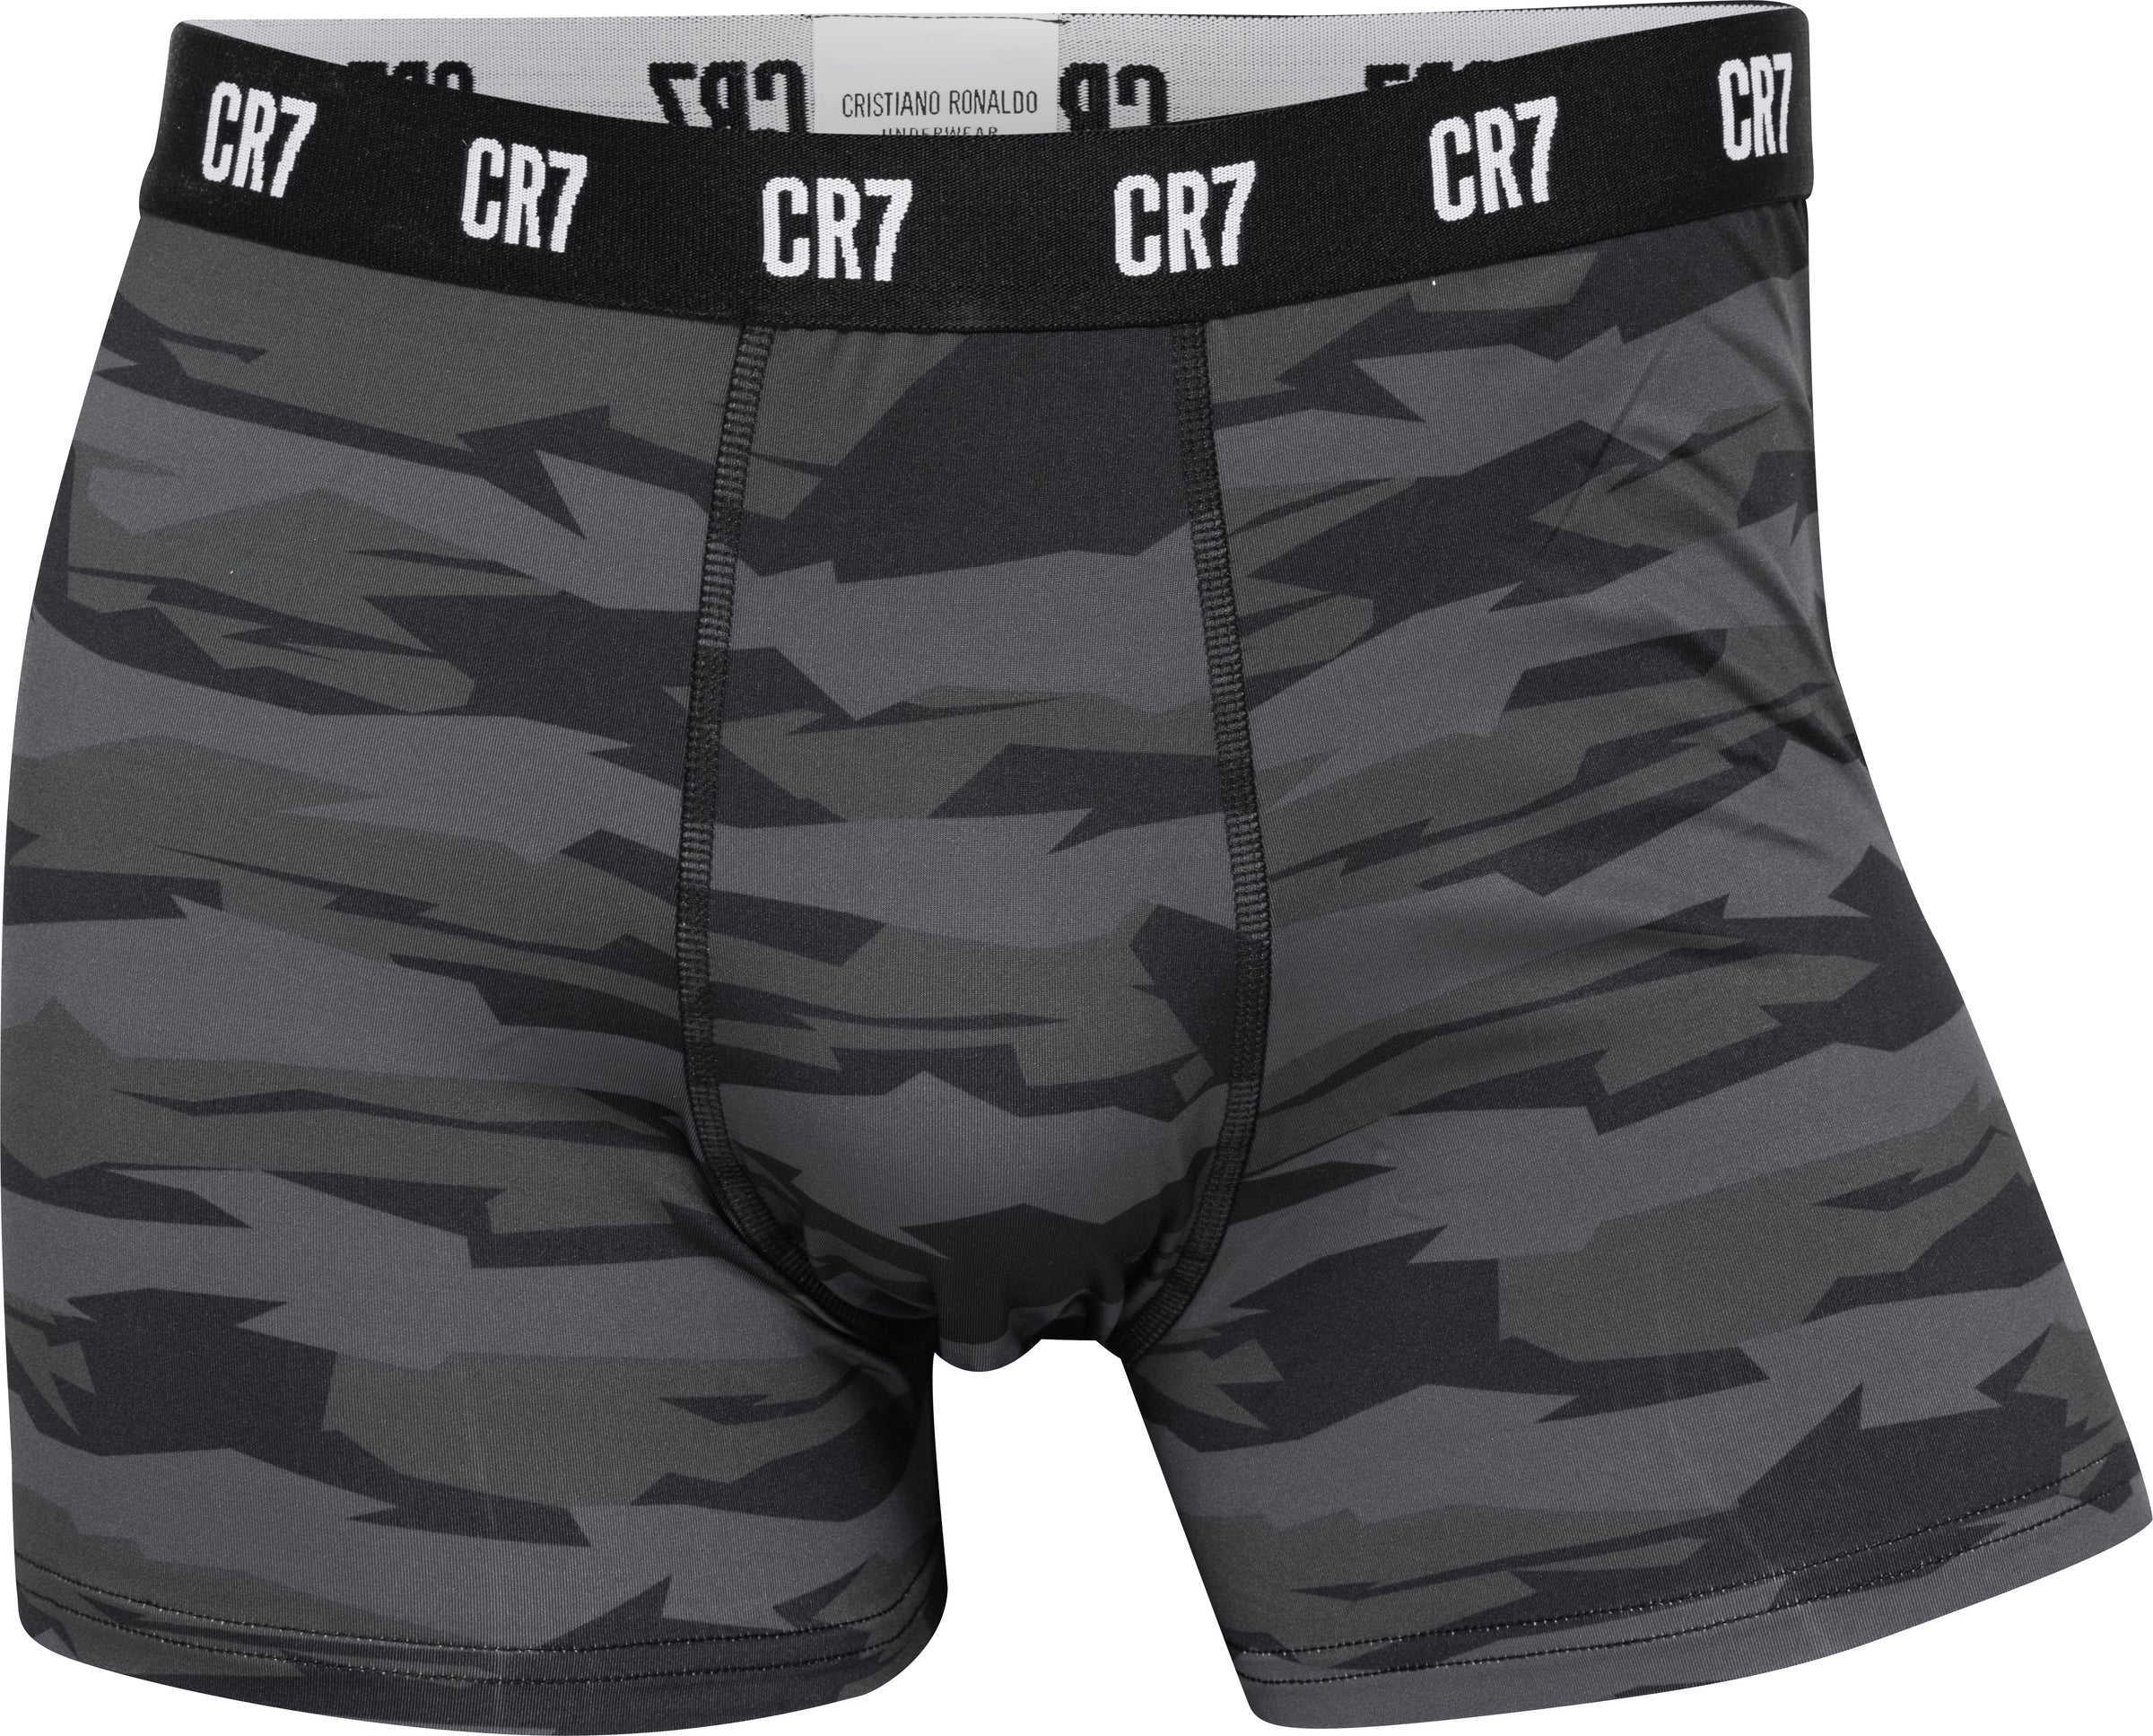 CR7 Underwear Singapore